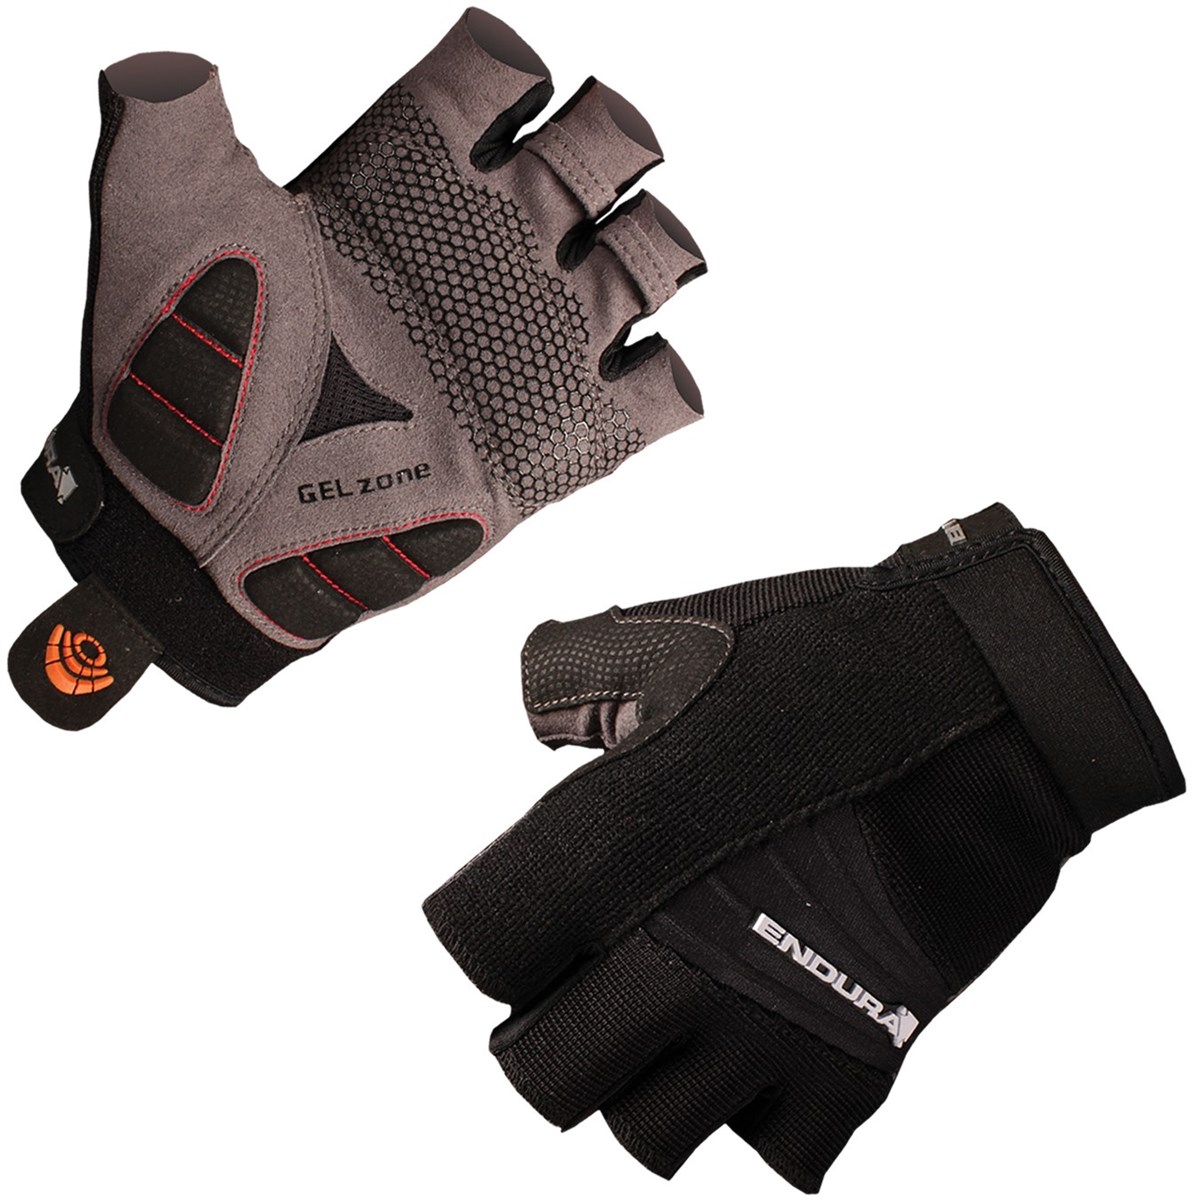 Endura Mighty Mitt Short Finger Cycling Gloves SS16